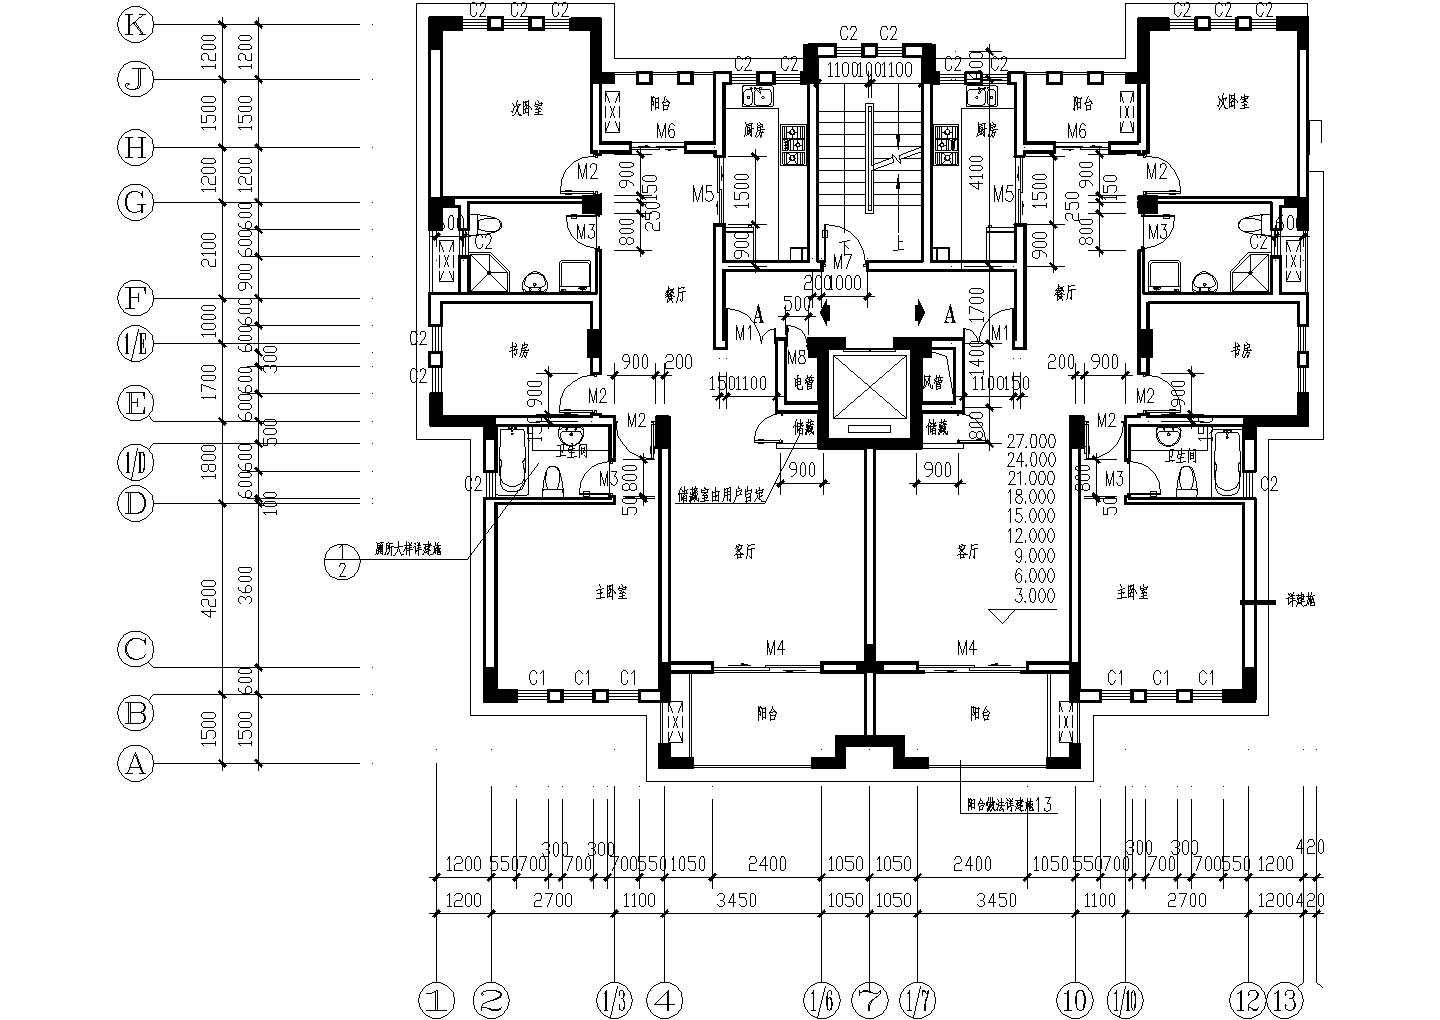 140平方米小高层一梯两户住宅户型设计cad图(含效果图)